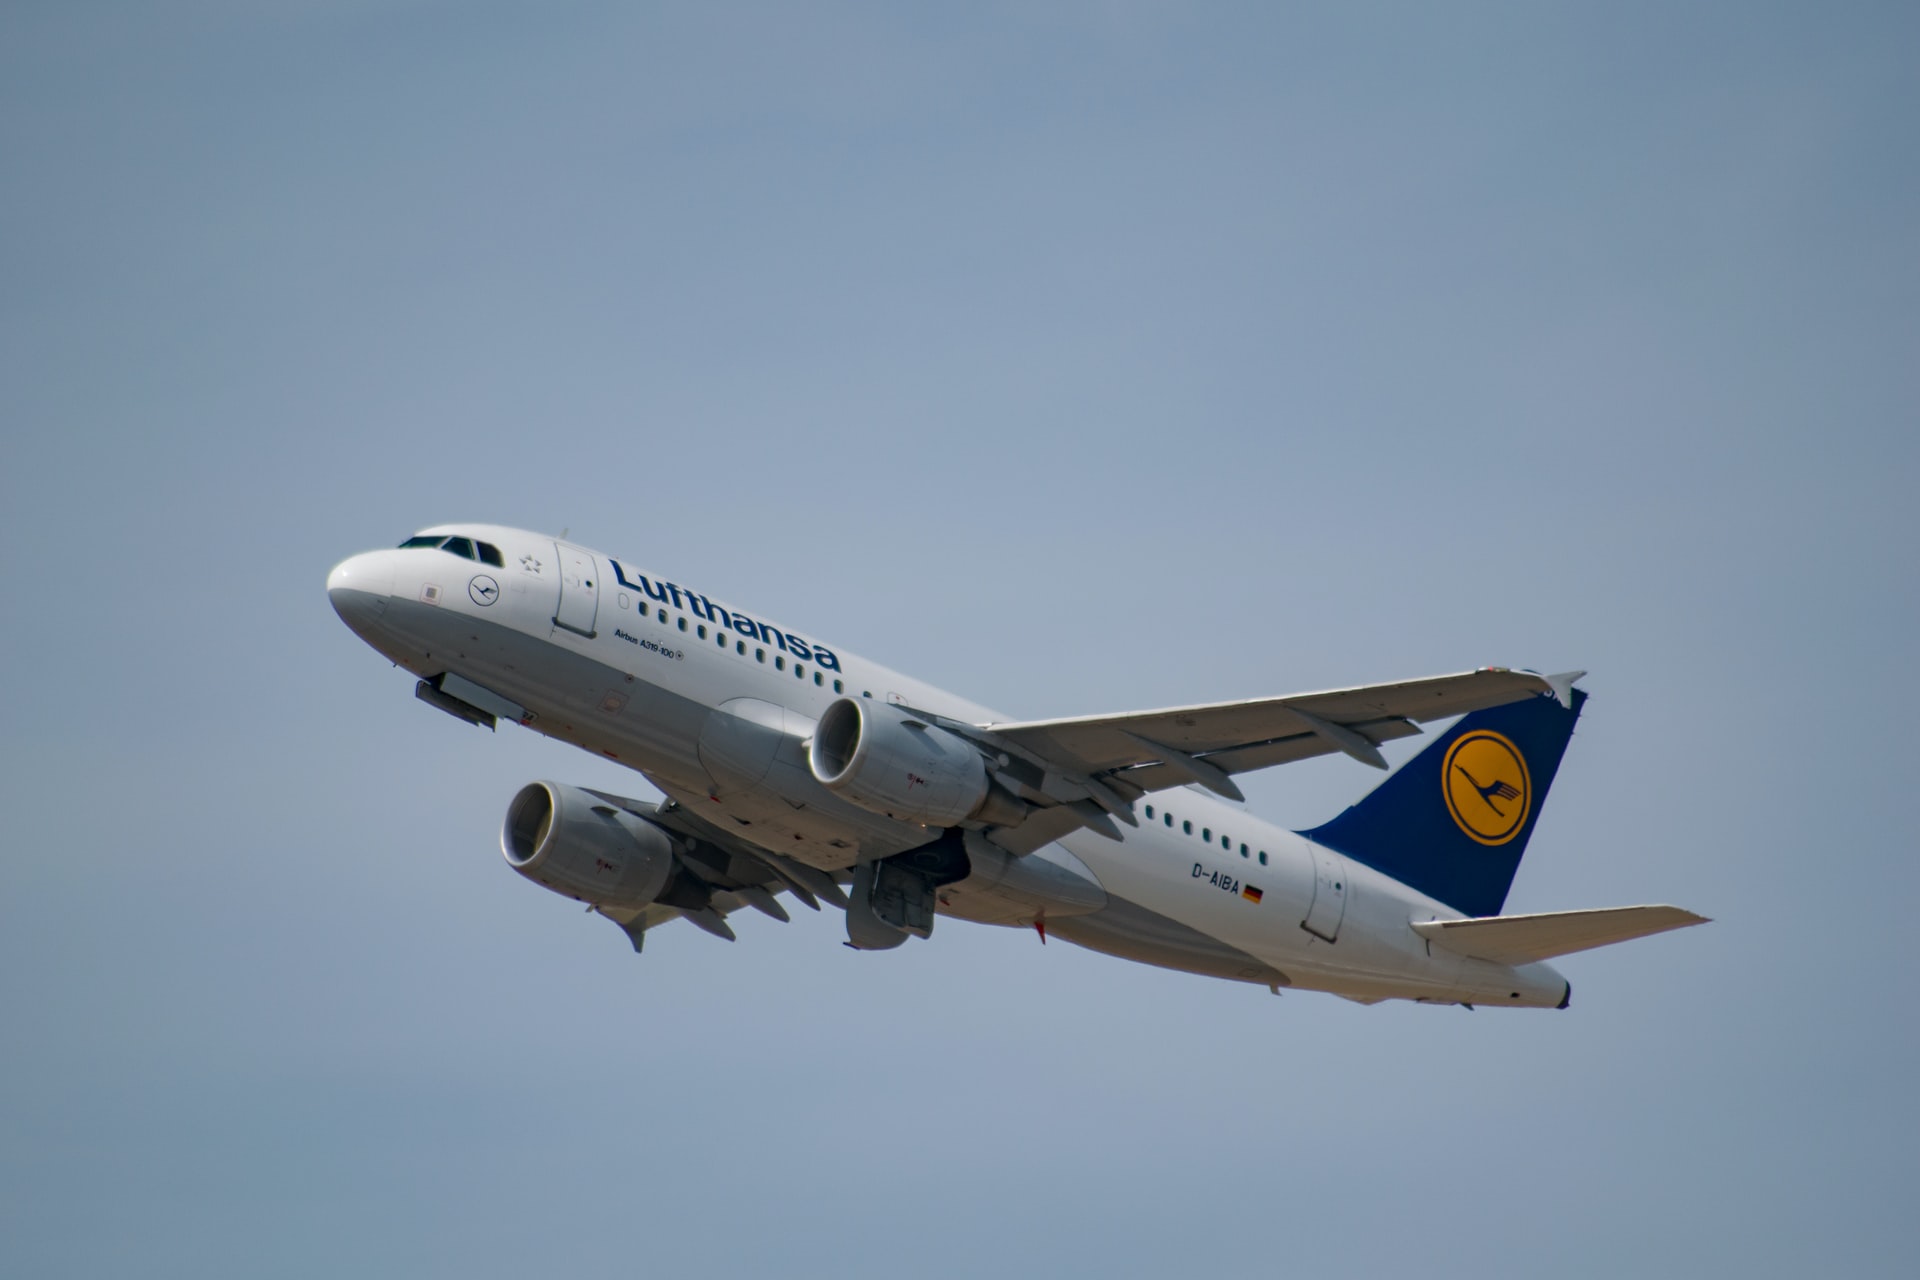 Staking cabinepersoneel Brussels Airlines: heb je recht op een schadevergoeding als je vlucht geannuleerd wordt?